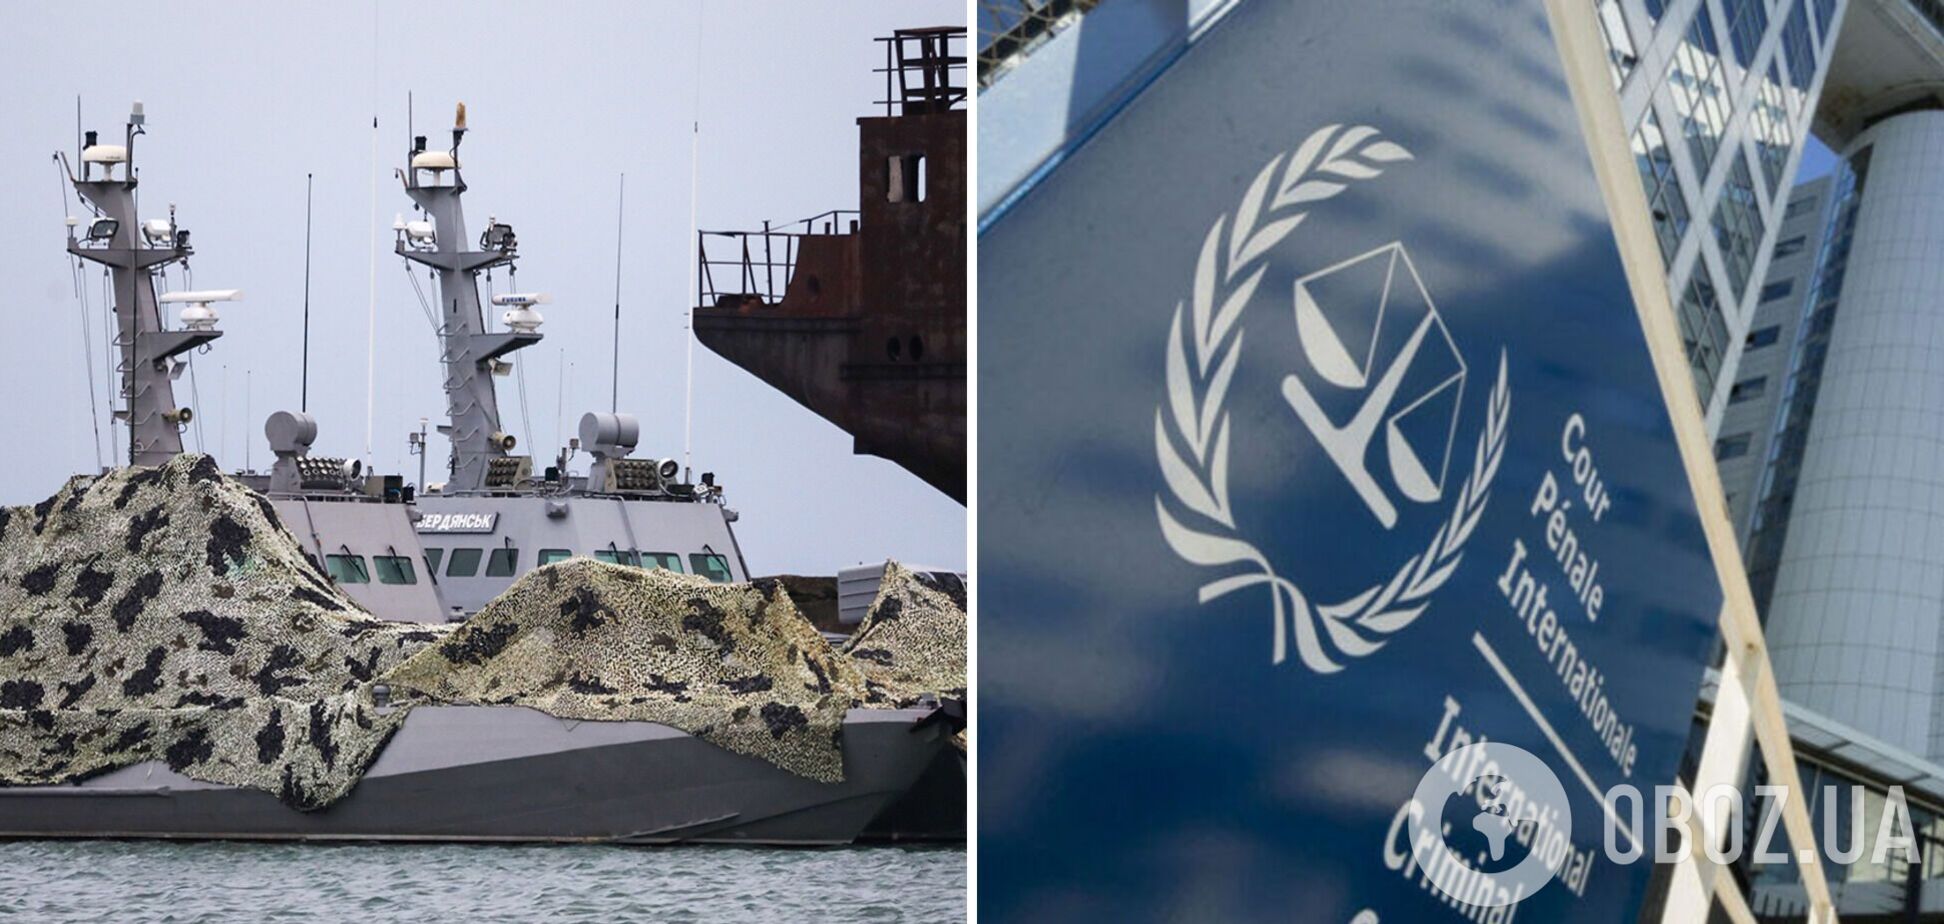 Украина одержала промежуточную победу в морском арбитраже ООН по делу о захвате моряков в Керченском проливе